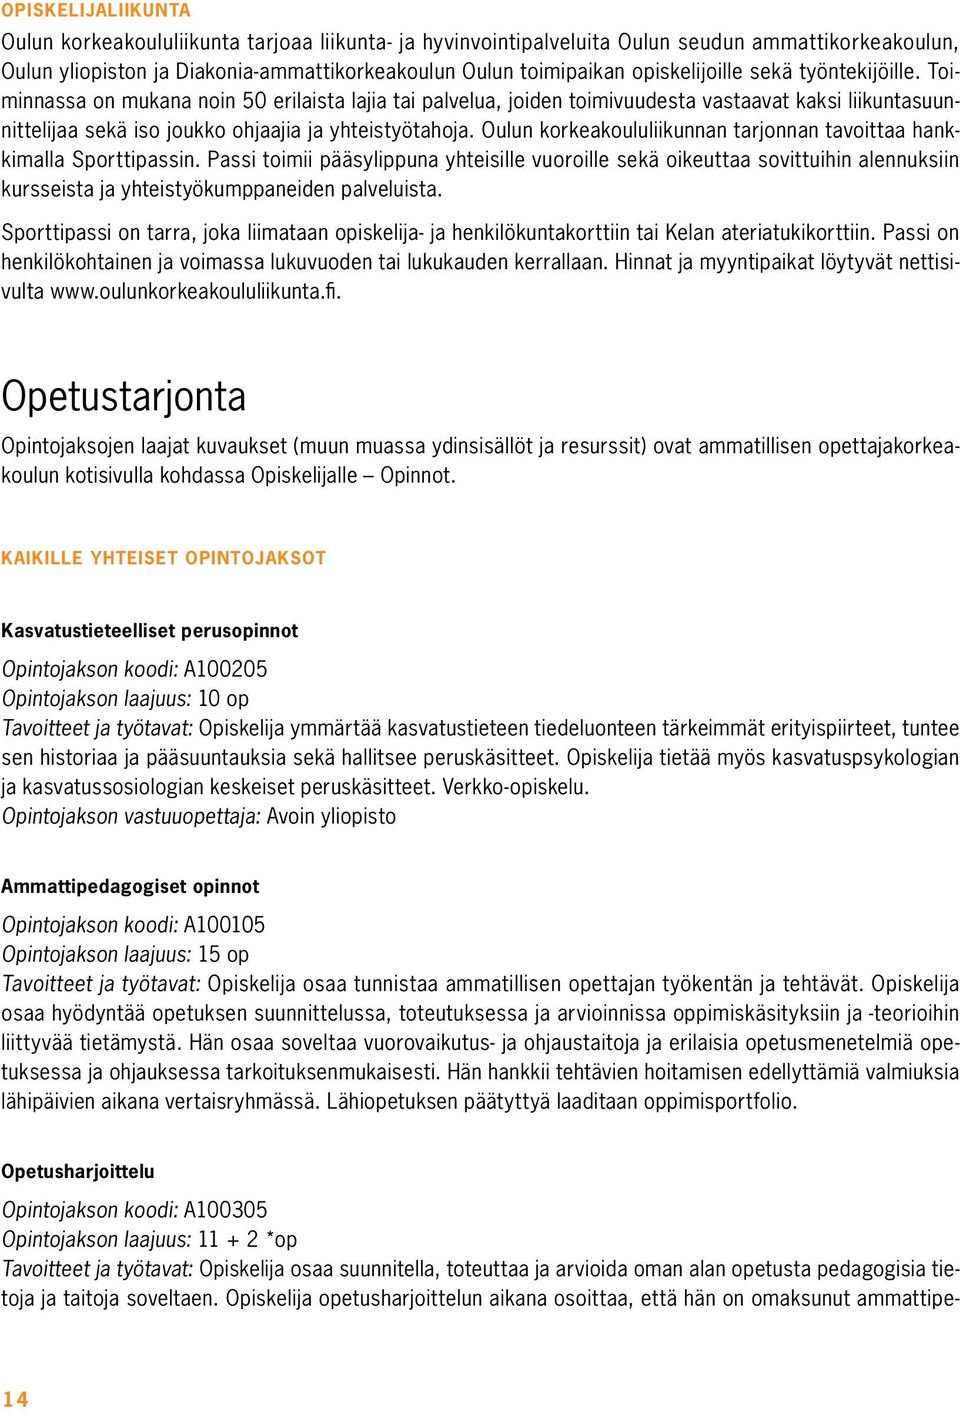 Oulun korkeakoululiikunnan tarjonnan tavoittaa hankkimalla Sporttipassin.